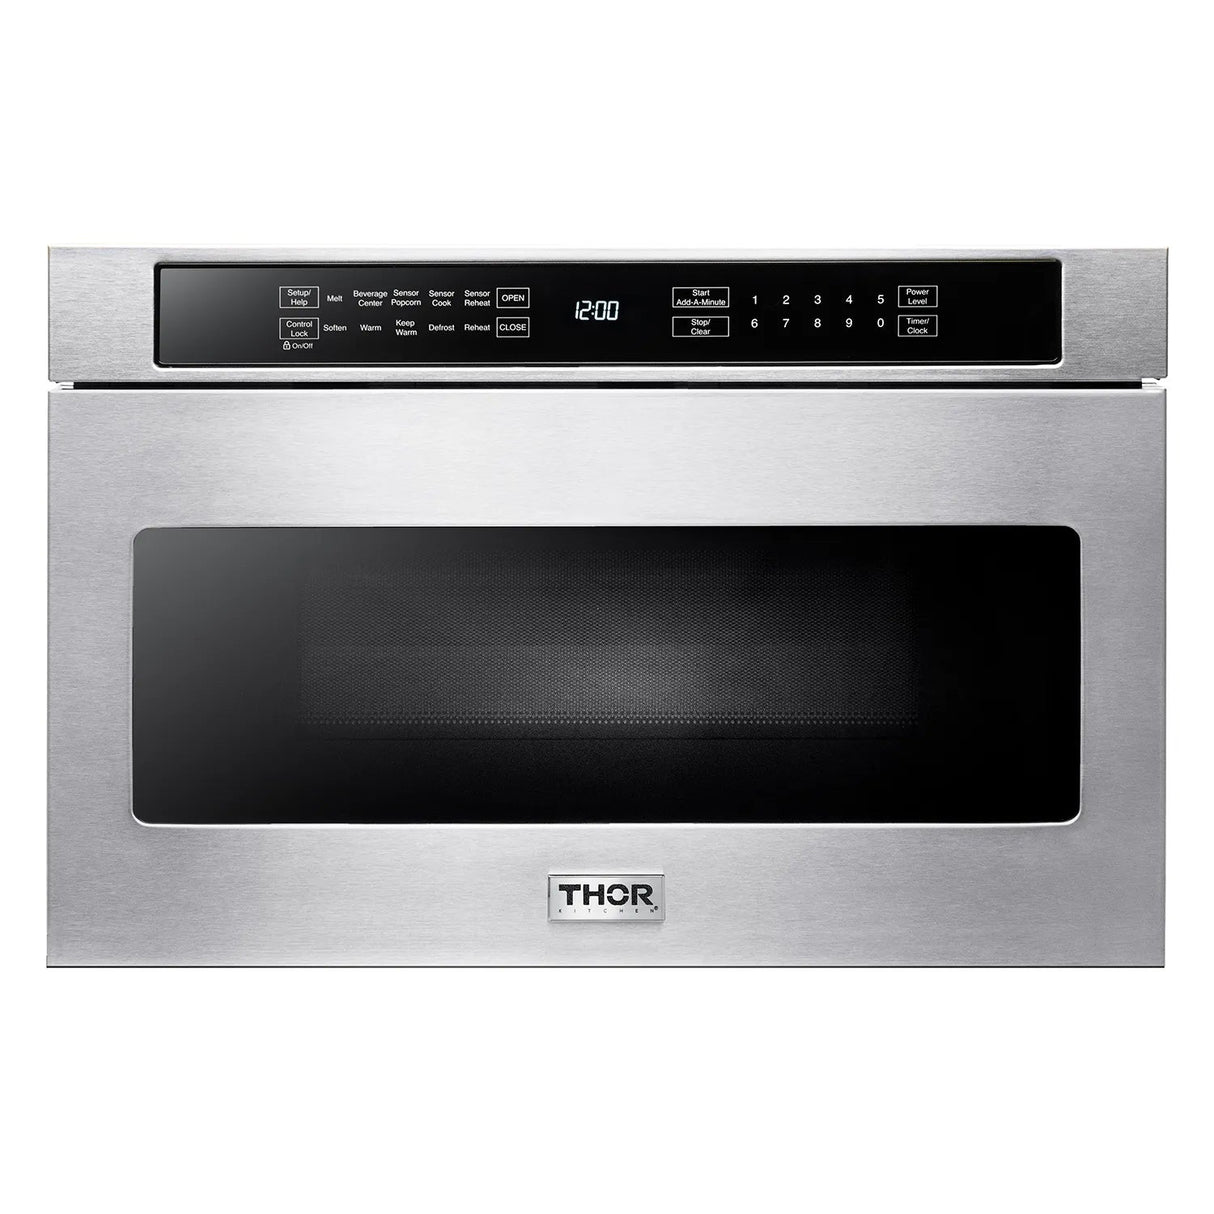 THOR Kitchen - 5 Piece Kitchen Package - 30" Gas Range, 30" Range Hood, 24" Dishwasher, 36" Refrigerator & 24" Microwave